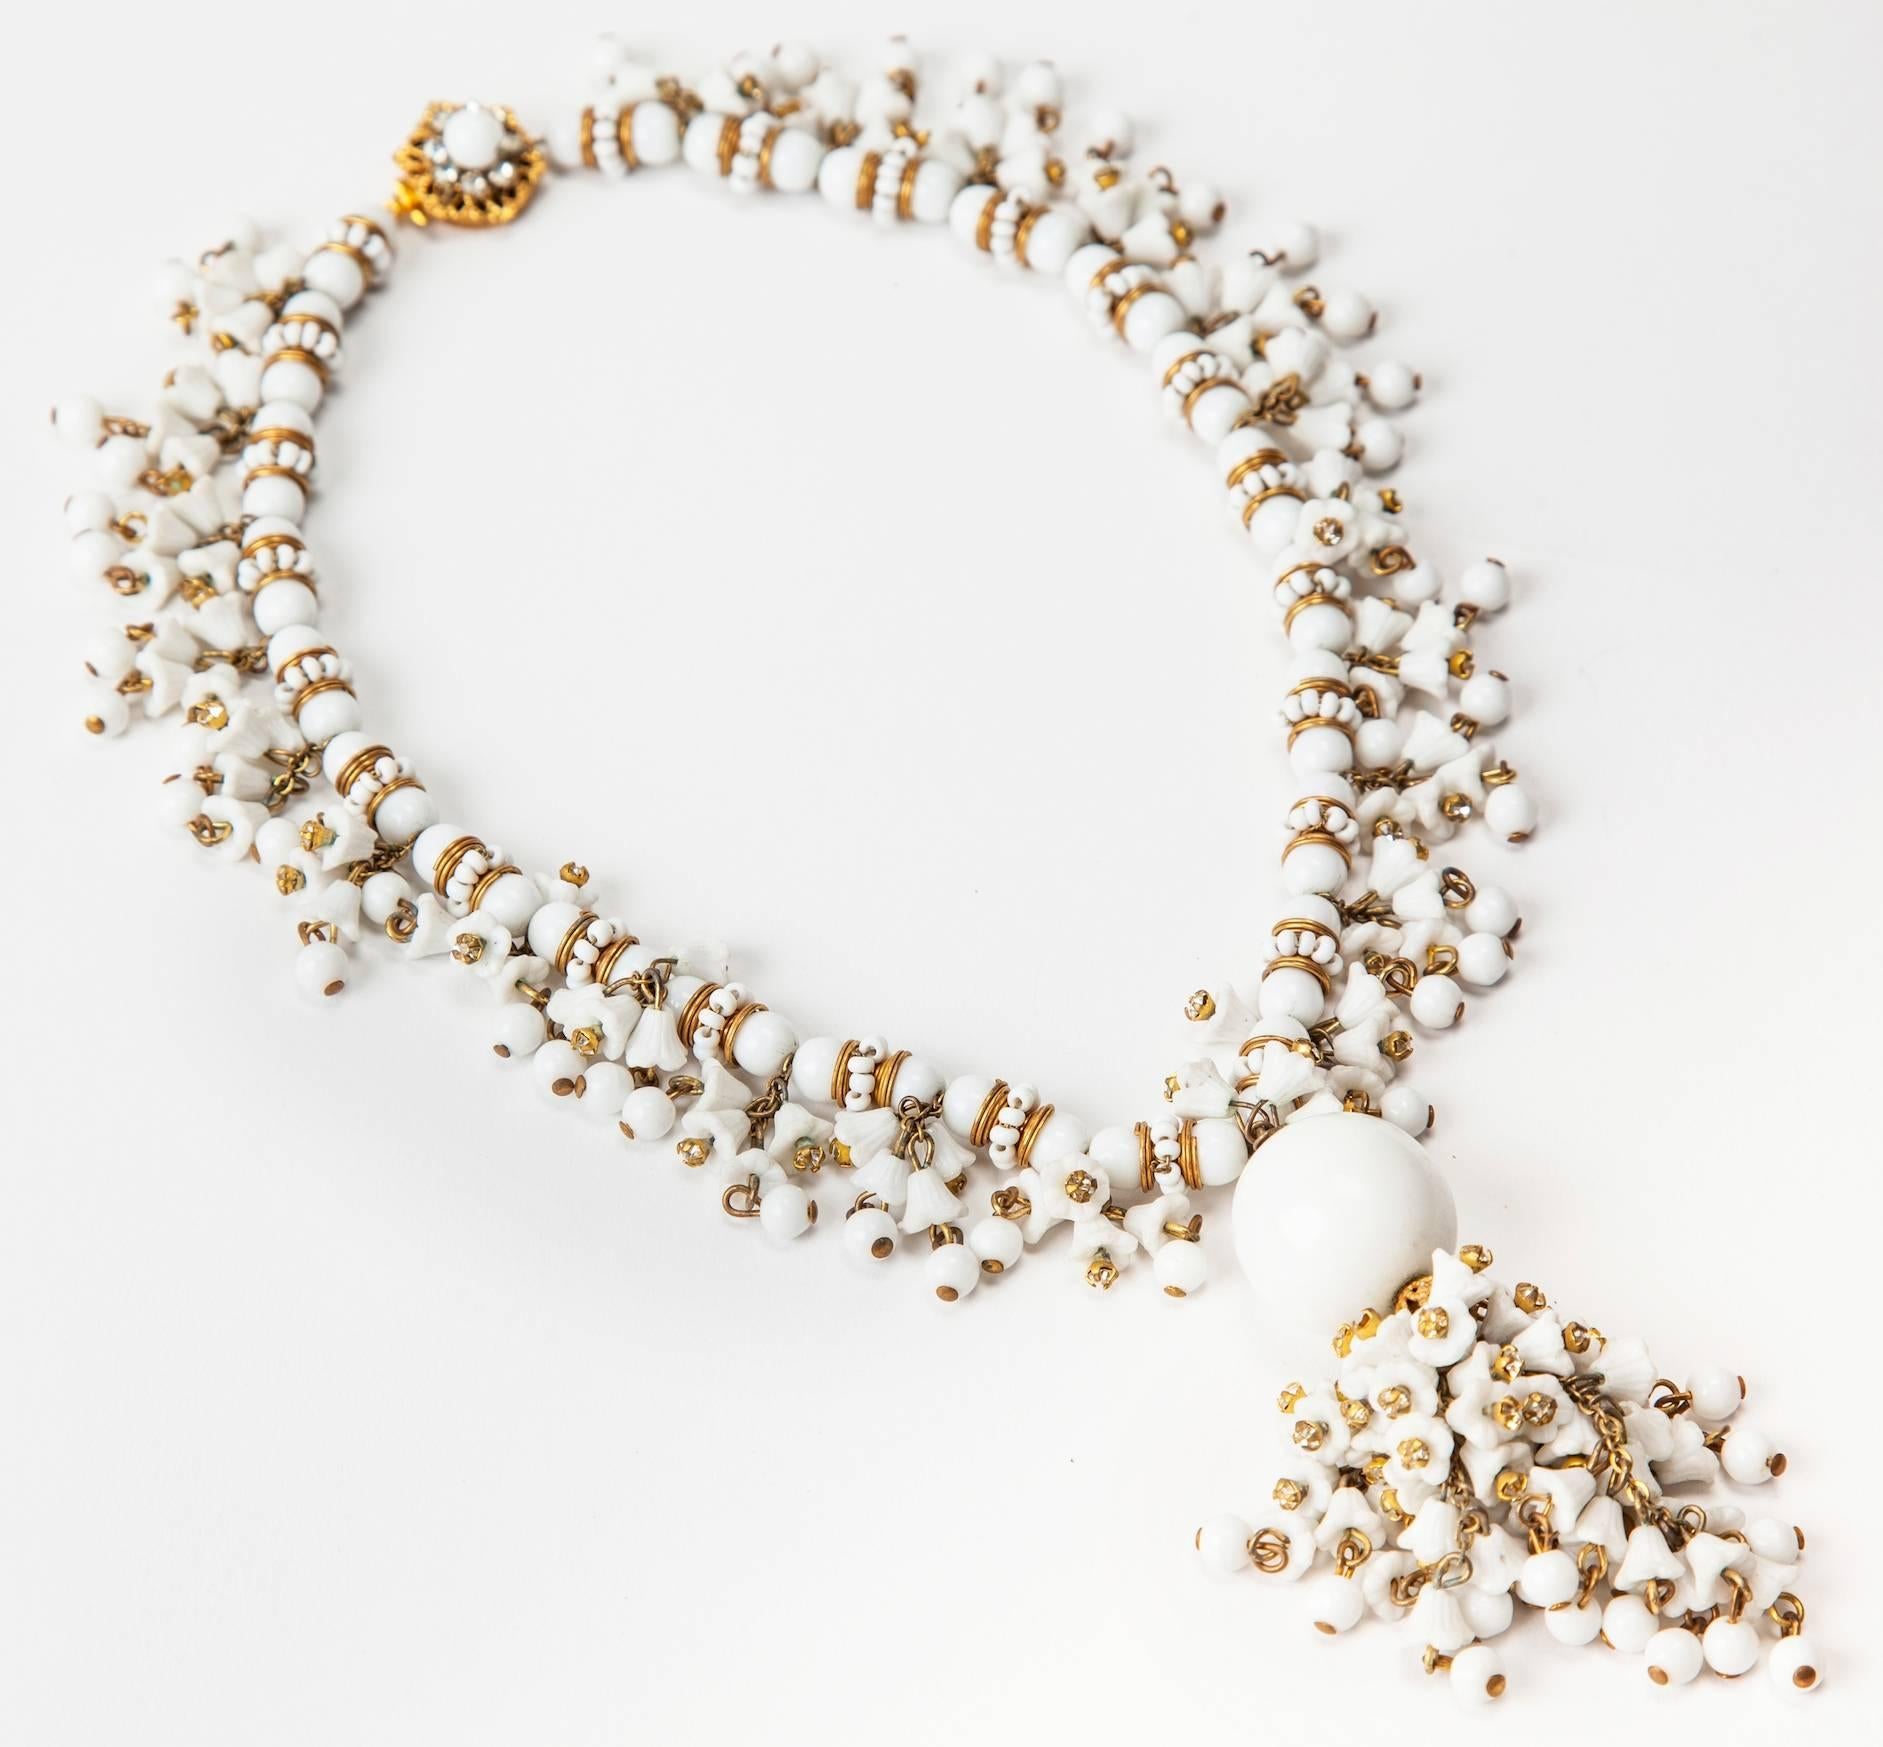 Miriam Haskell kunstvolle, handgefertigte Halskette aus Milchglas Glockenblumen und runden Perlen. Weiter verziert mit den charakteristischen russischen vergoldeten Abstandshaltern, Milchglastropfen und Kristallrosen an der klassisch verzierten